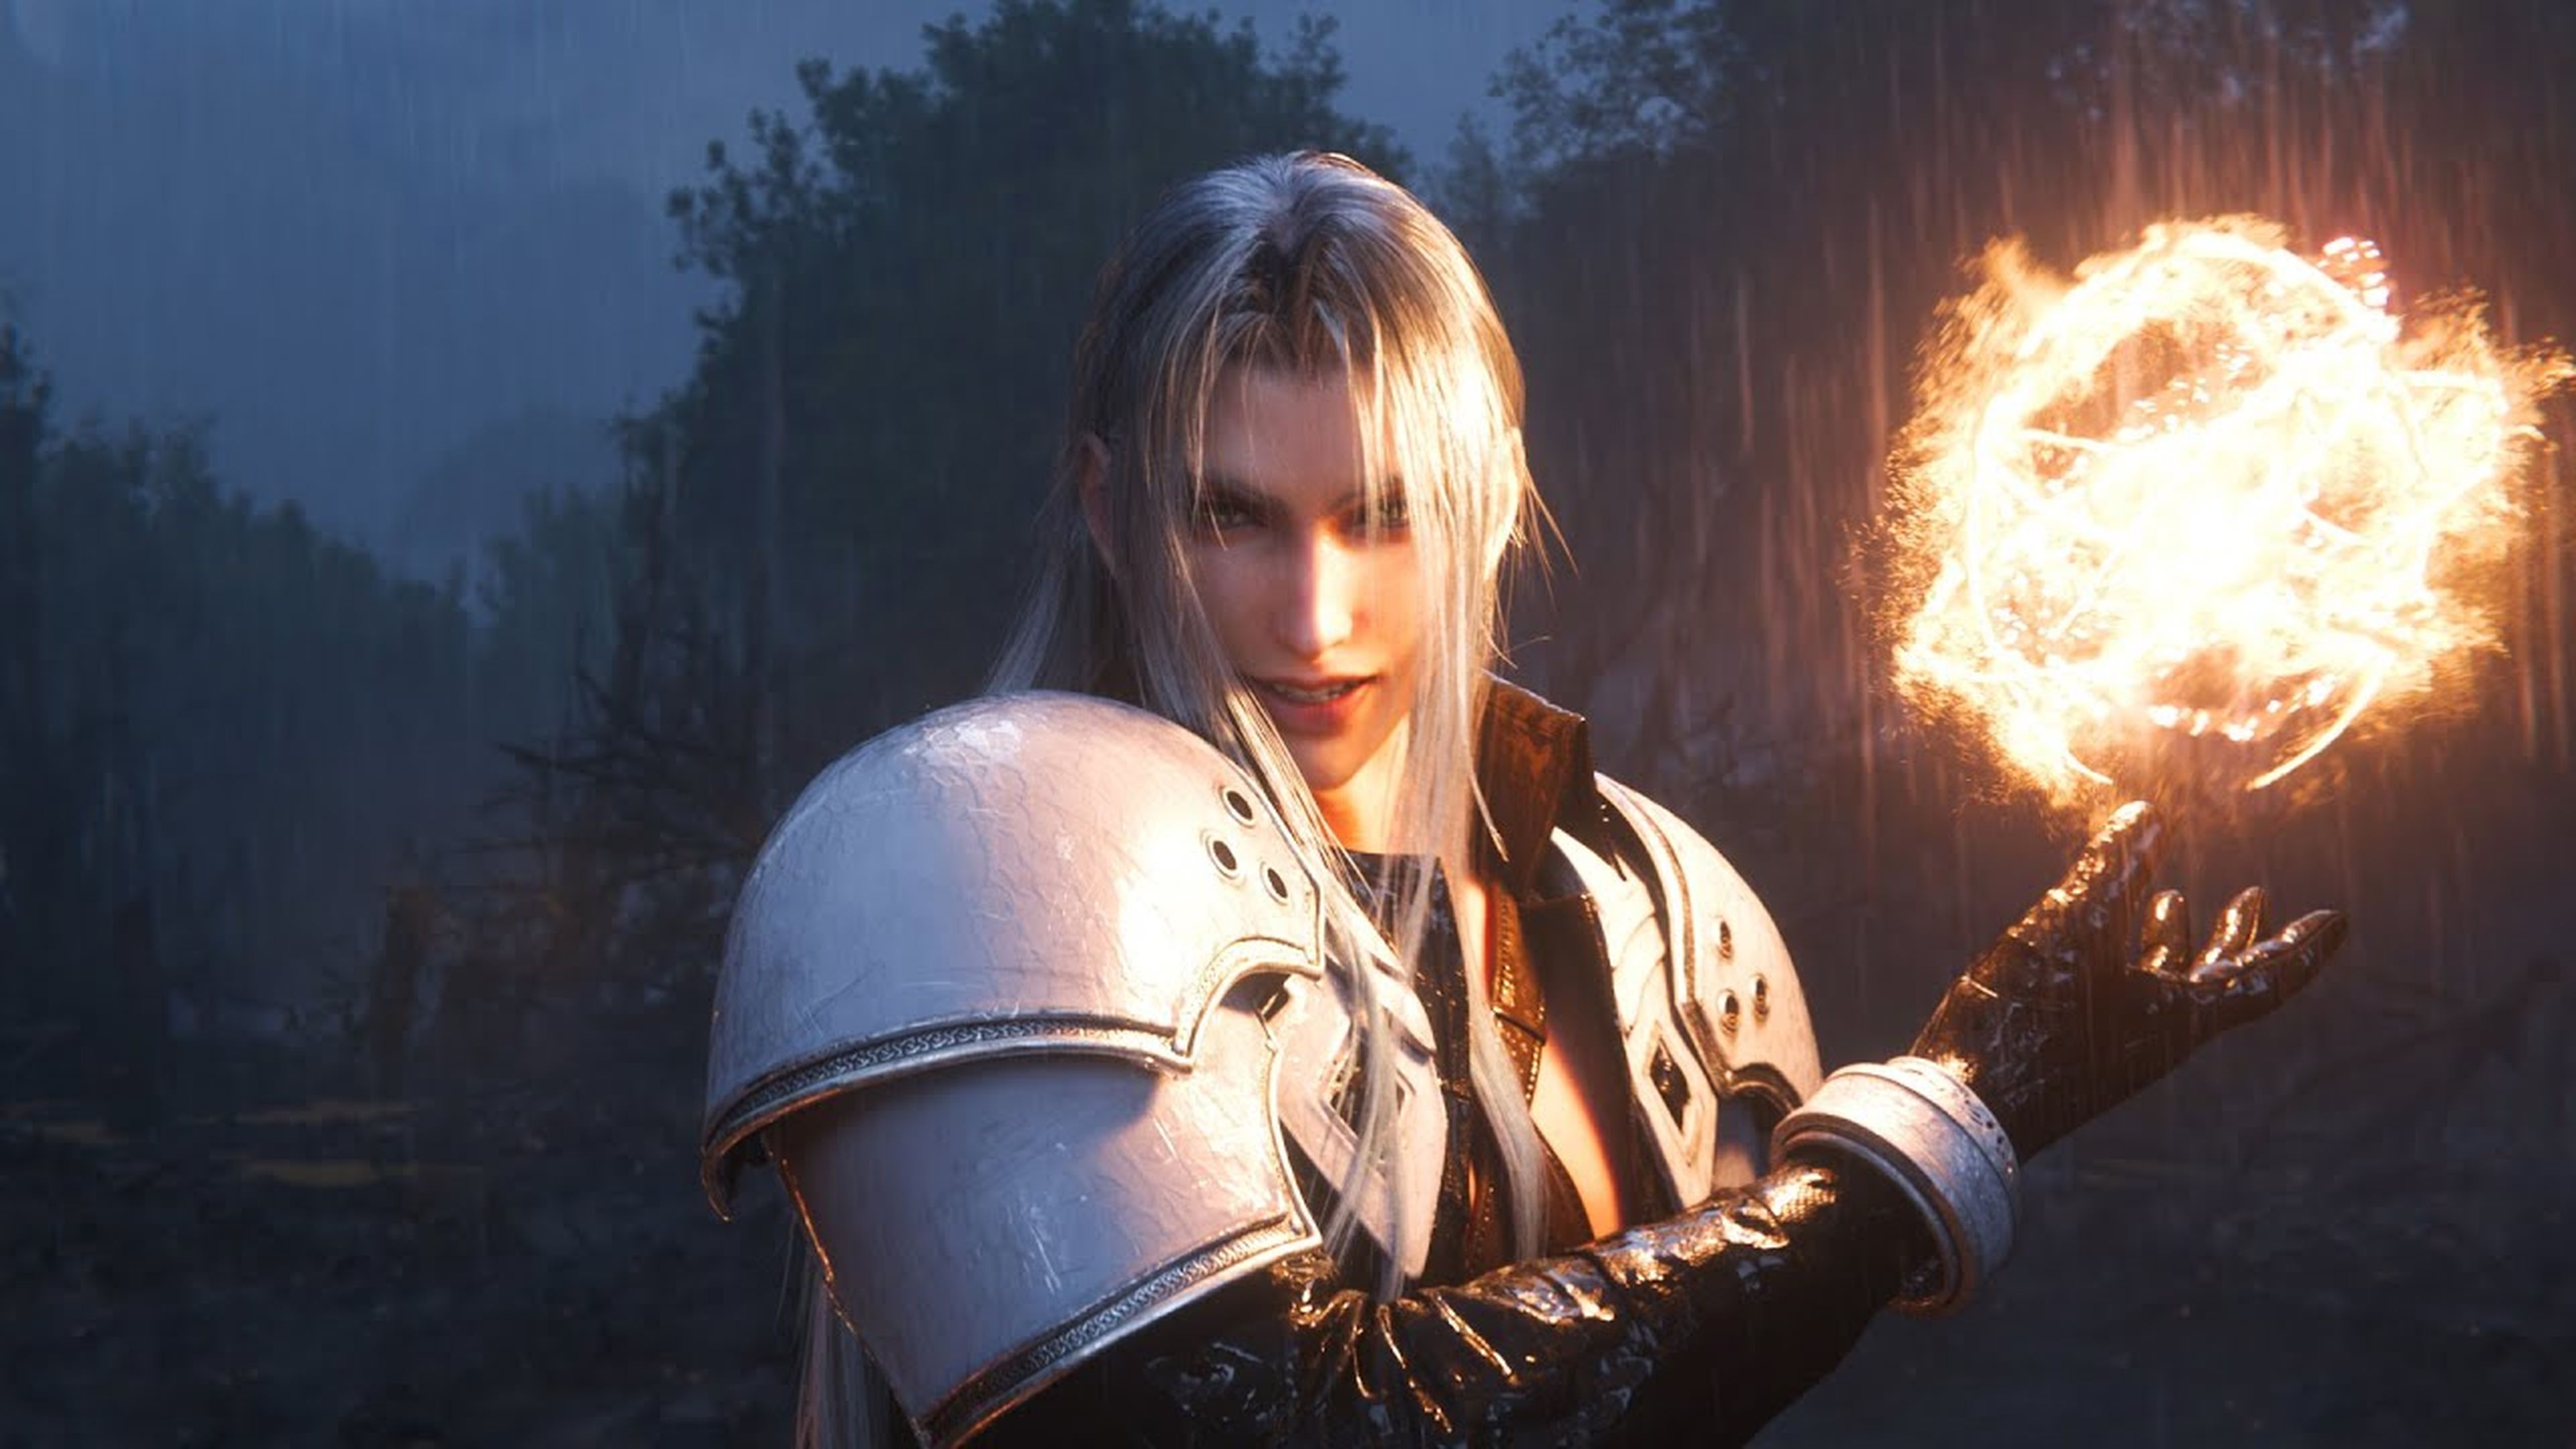 Final Fantasy VII Remake en PC confirma sus requisitos mínimos y  recomendados - Meristation